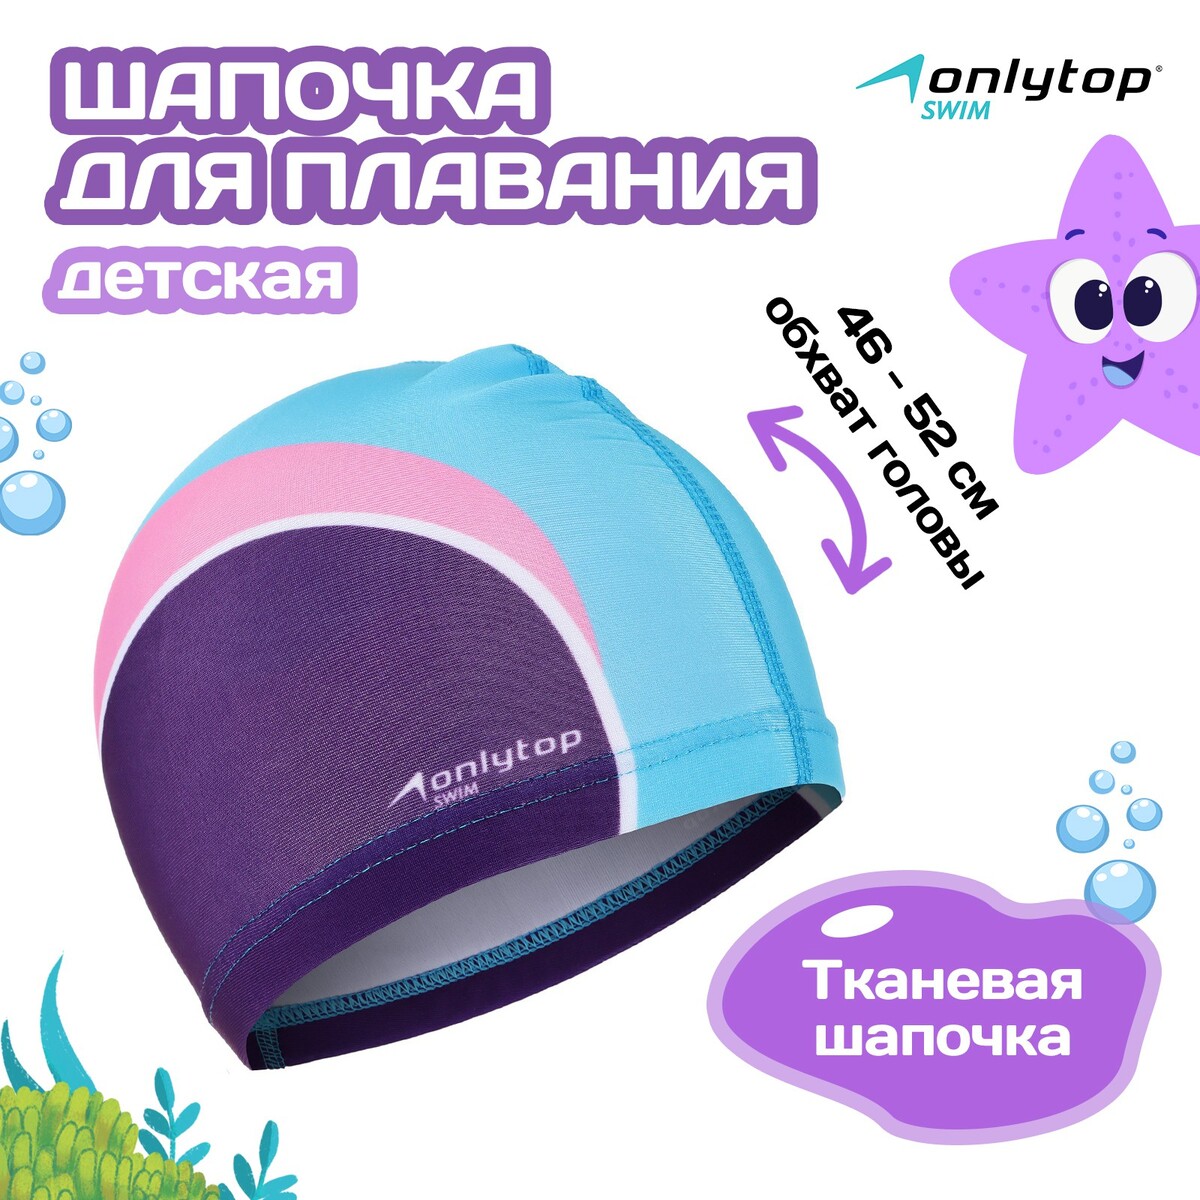 Шапочка для плавания детская onlytop swim, тканевая, обхват 46-52 см шапочка для плавания arena silicone cap 006359 902